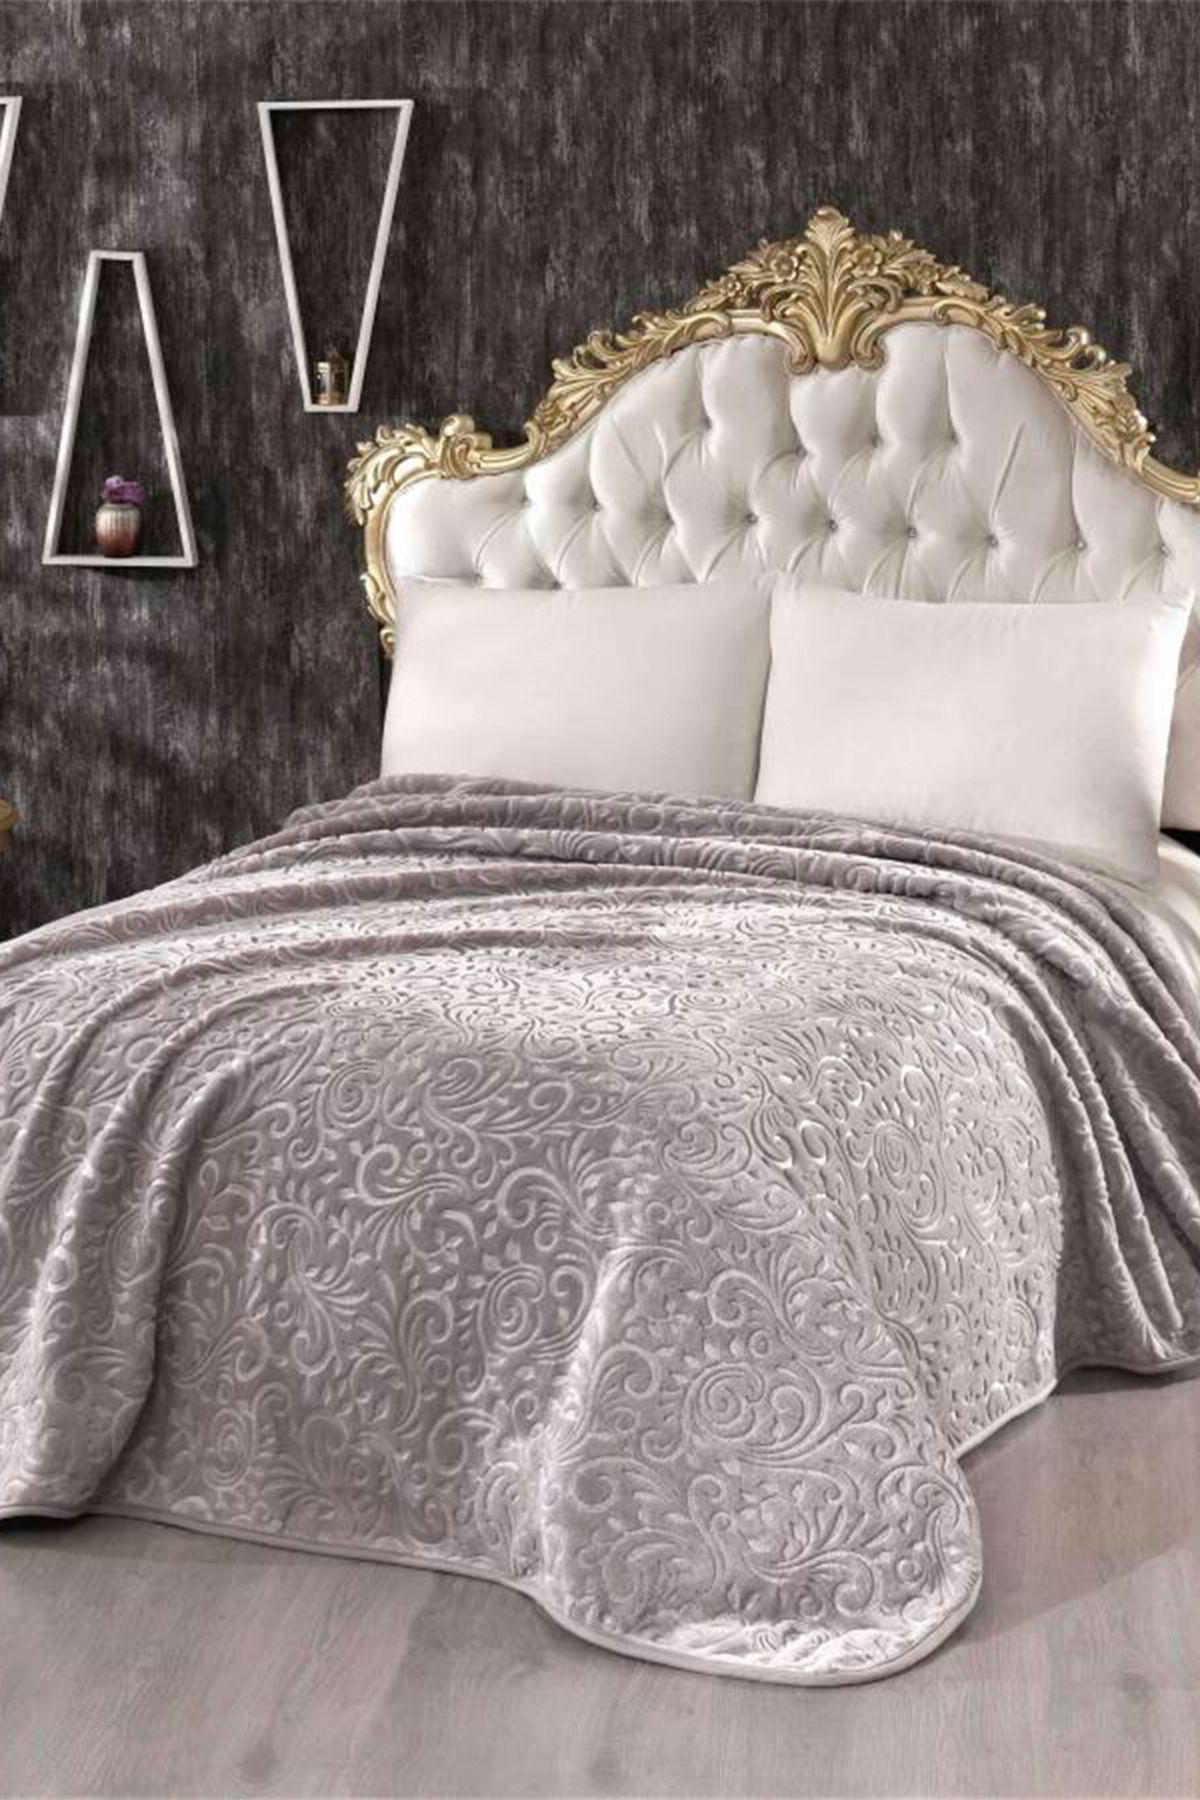 MİNK Mink Daisy 516 Gümüş Çift Kişilik Battaniye/Yatak Örtüsü 220*240 cm